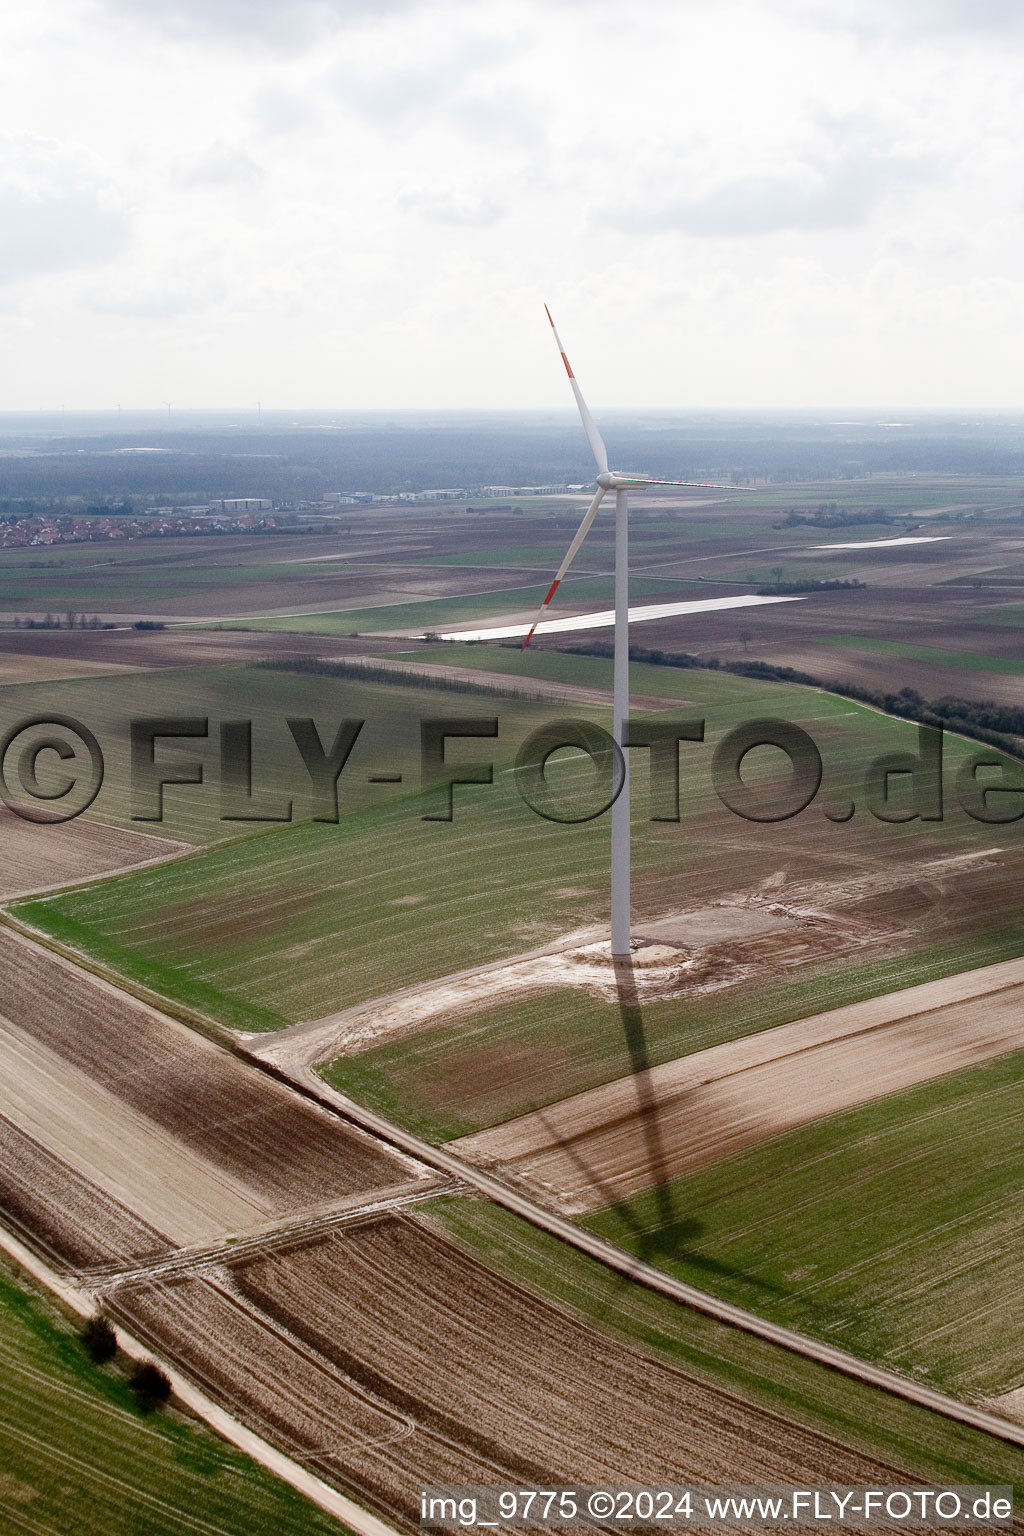 Éoliennes à Offenbach an der Queich dans le département Rhénanie-Palatinat, Allemagne vue d'en haut